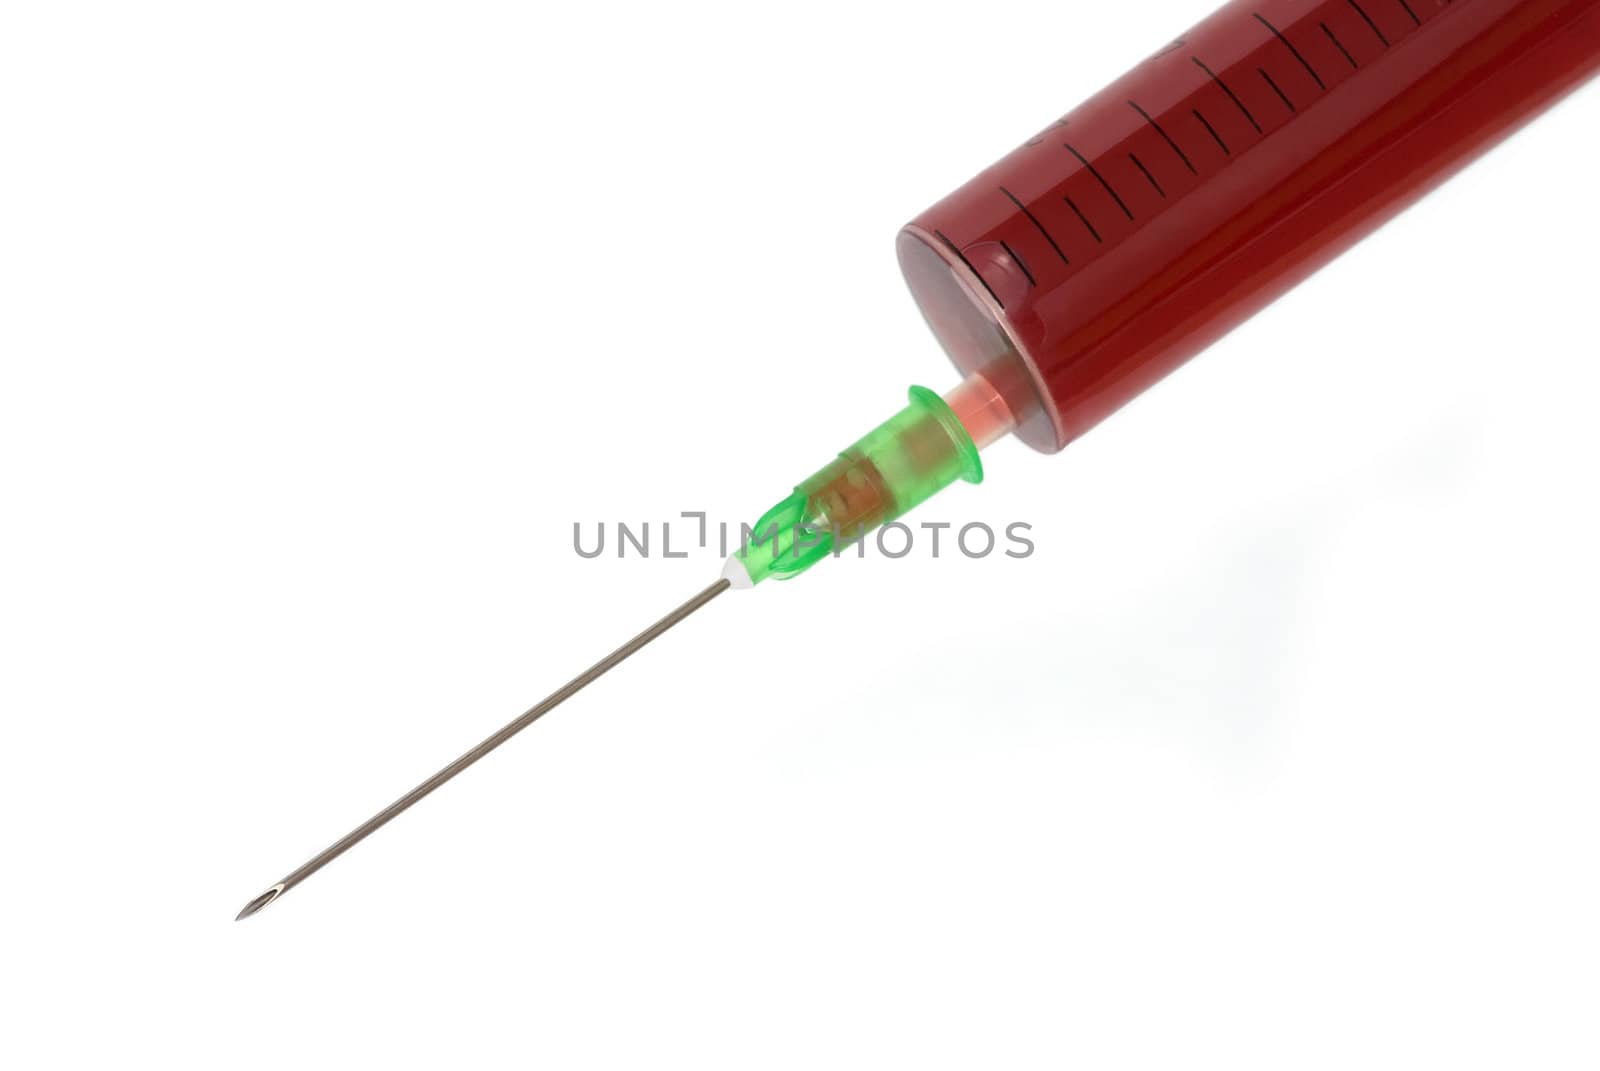 Bloody syringe by maxkrasnov